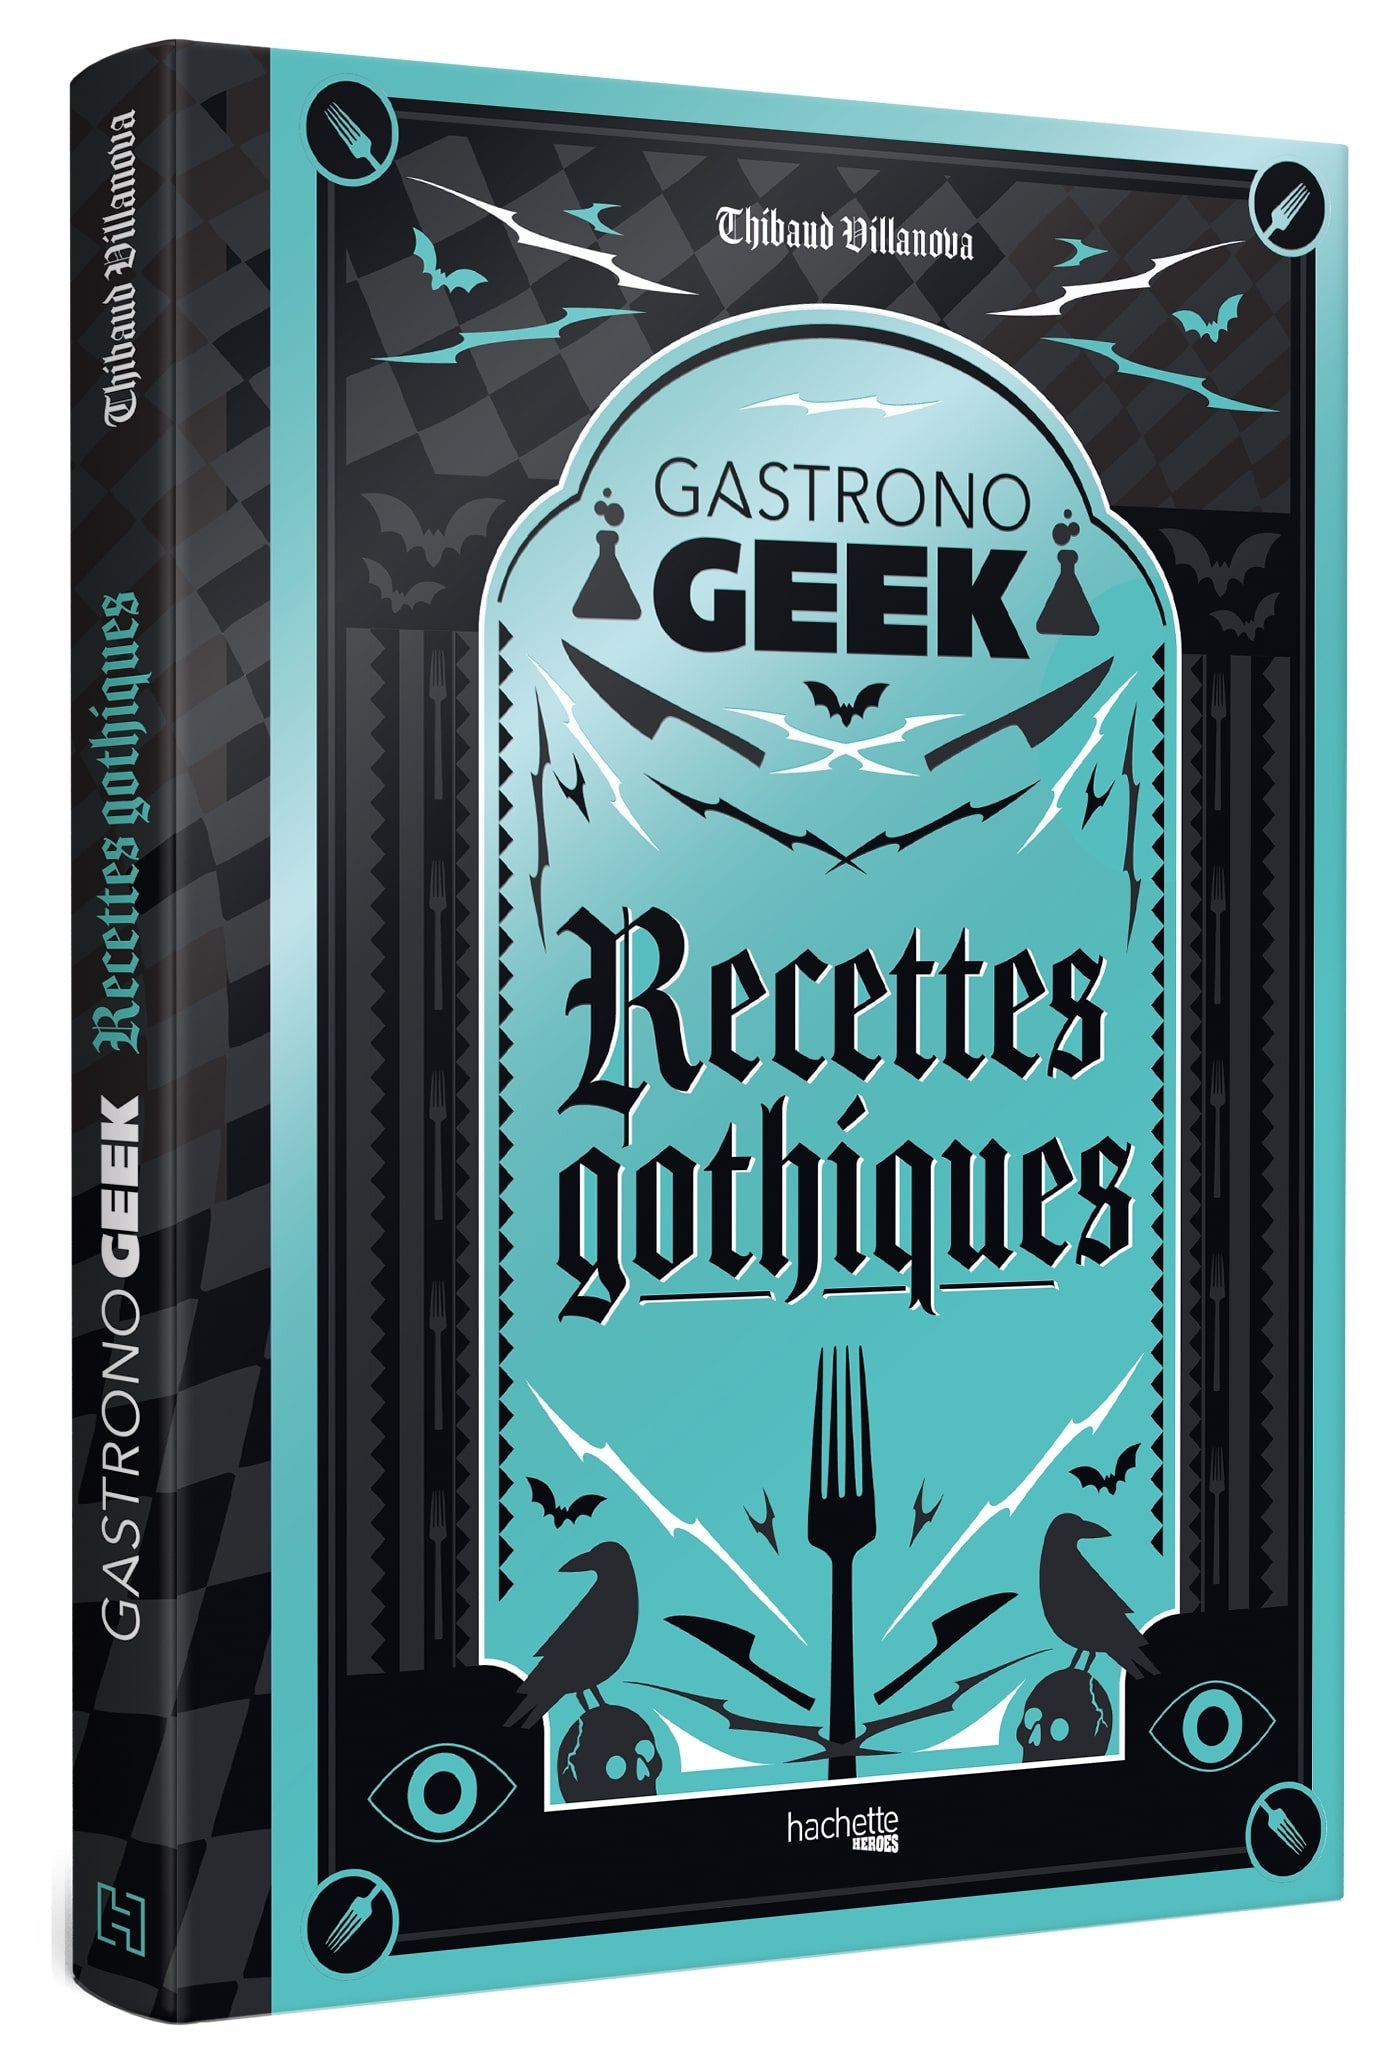 Recettes gothiques    - Hachette Ed. - Livre de cuisine - 